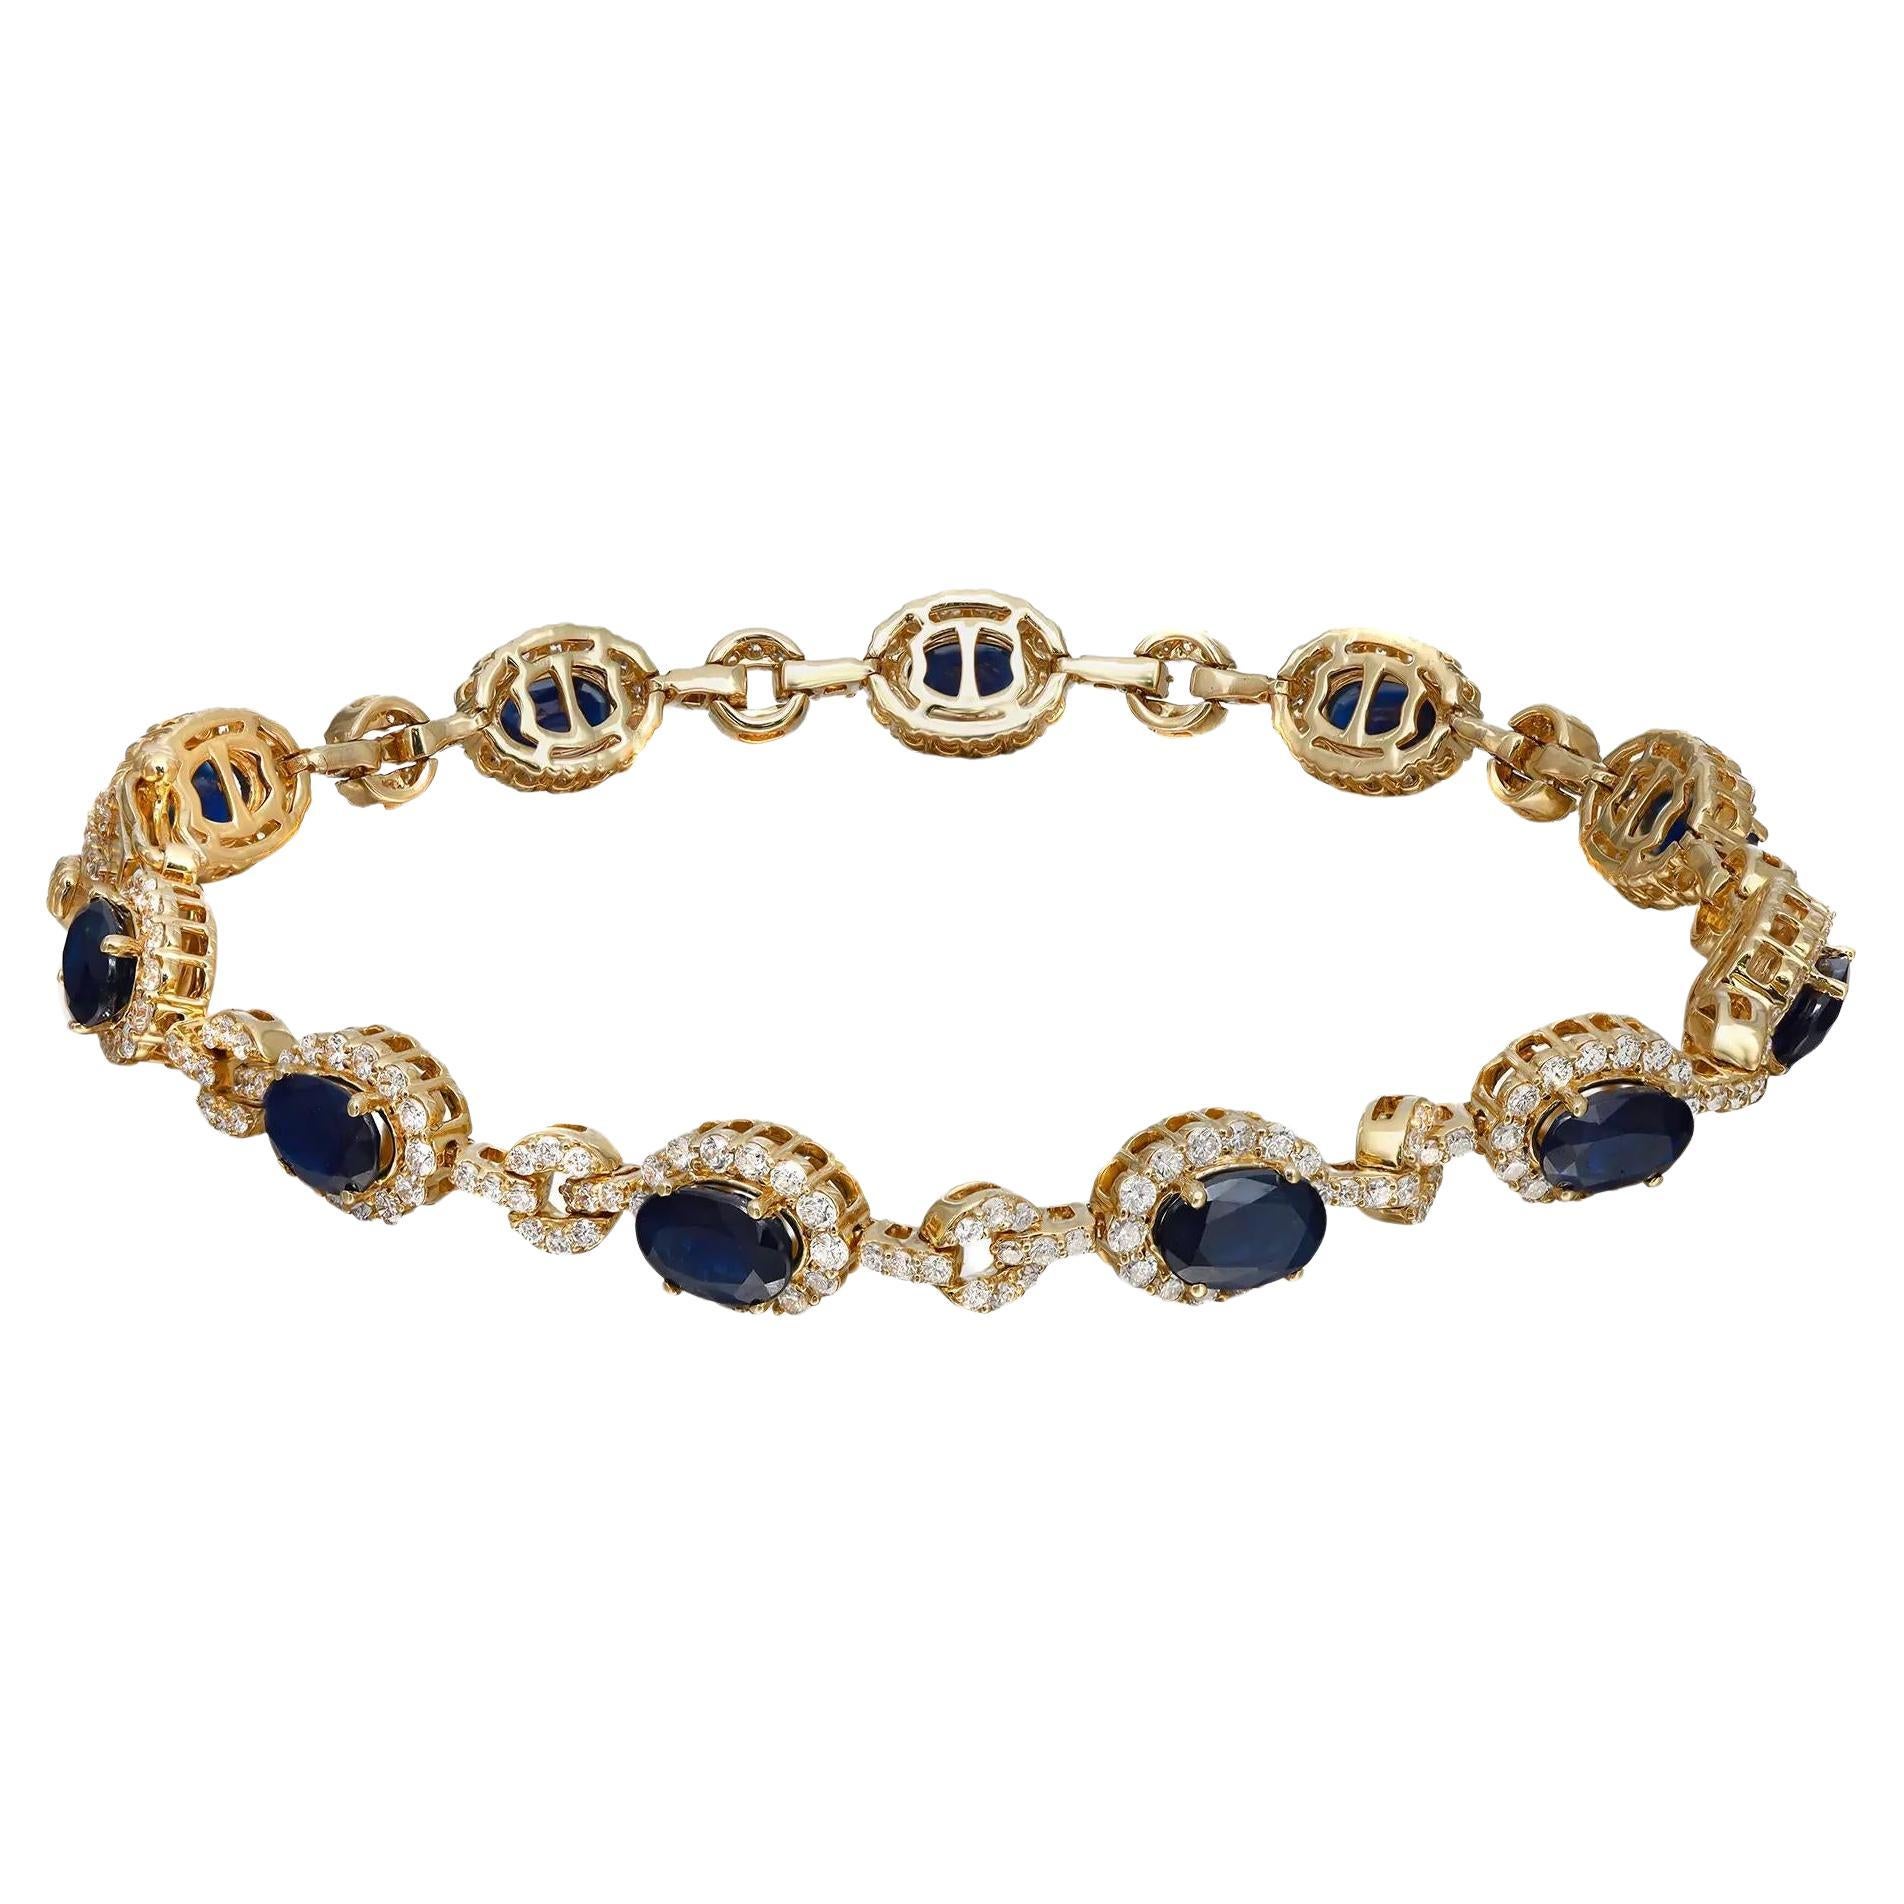 Ce magnifique bracelet exemplaire est réalisé en or jaune 14 carats. Whiting : 11 saphirs bleus ovales, sertis d'un halo de diamants ronds blancs et d'accents de diamants pavés sur les maillons. Poids total des diamants : 2,09 carats. Qualité du